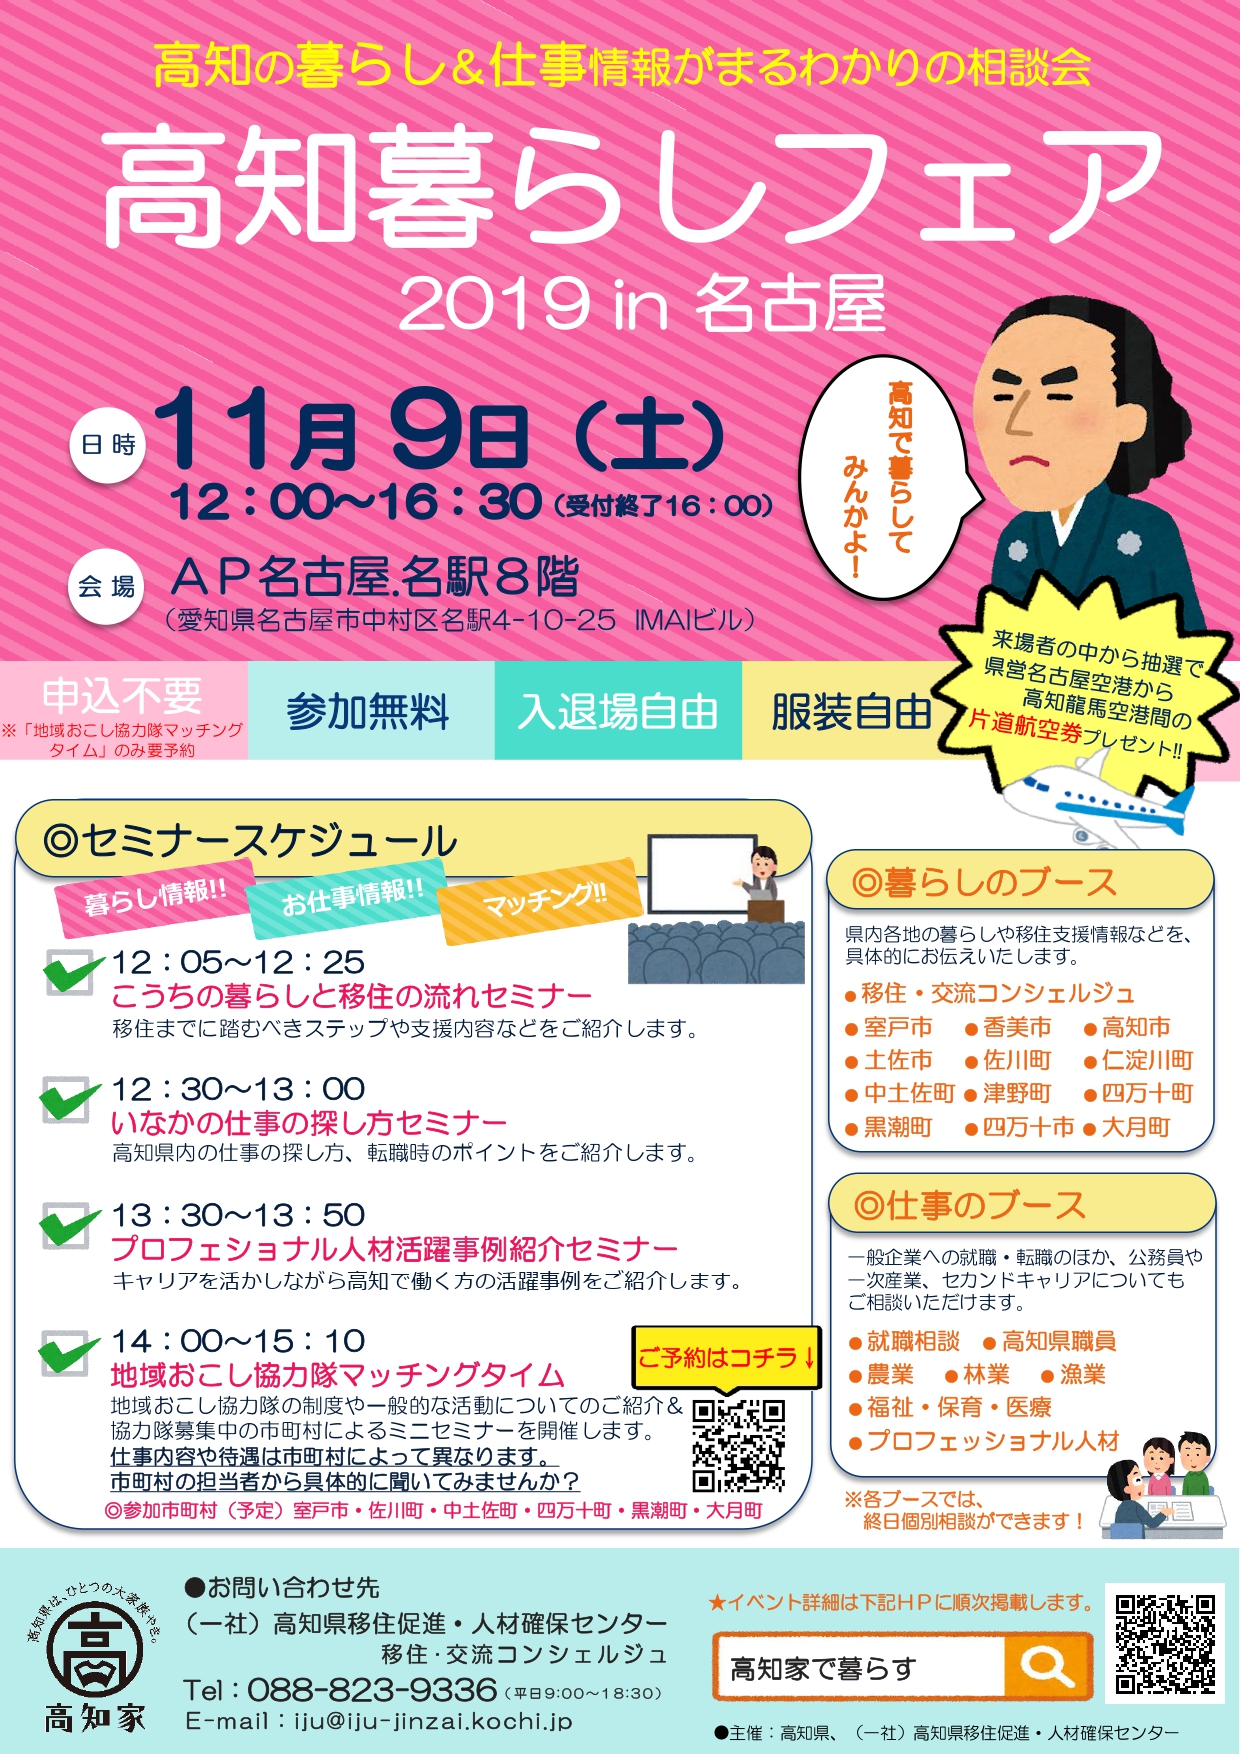 高知暮らしフェア2019 in名古屋 | 移住関連イベント情報